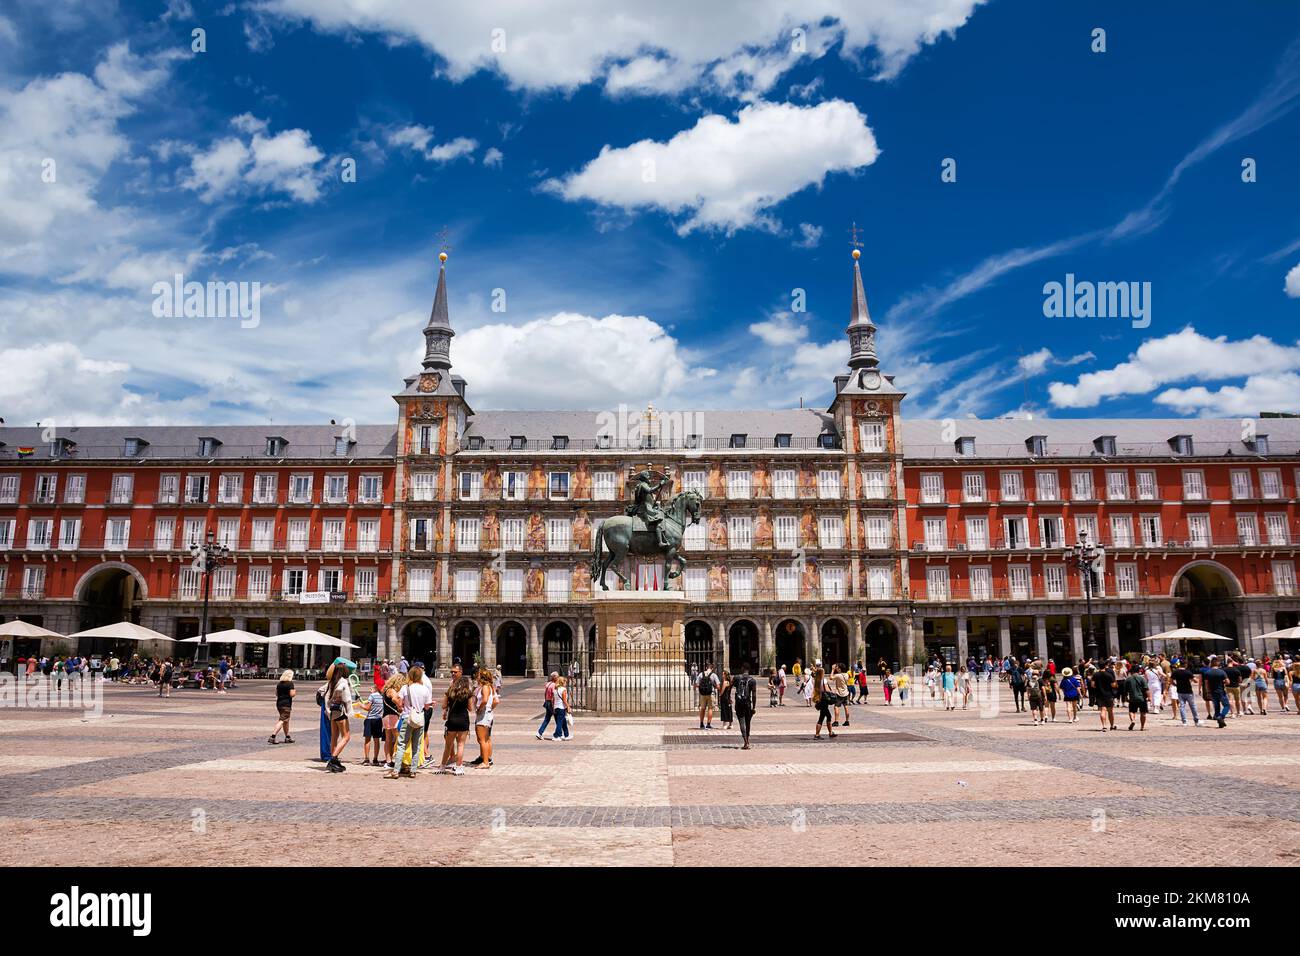 Madrid, España - 20 de junio de 2022: Fachada de los edificios de la Plaza Mayor llena de turistas, en el centro de Madrid Foto de stock